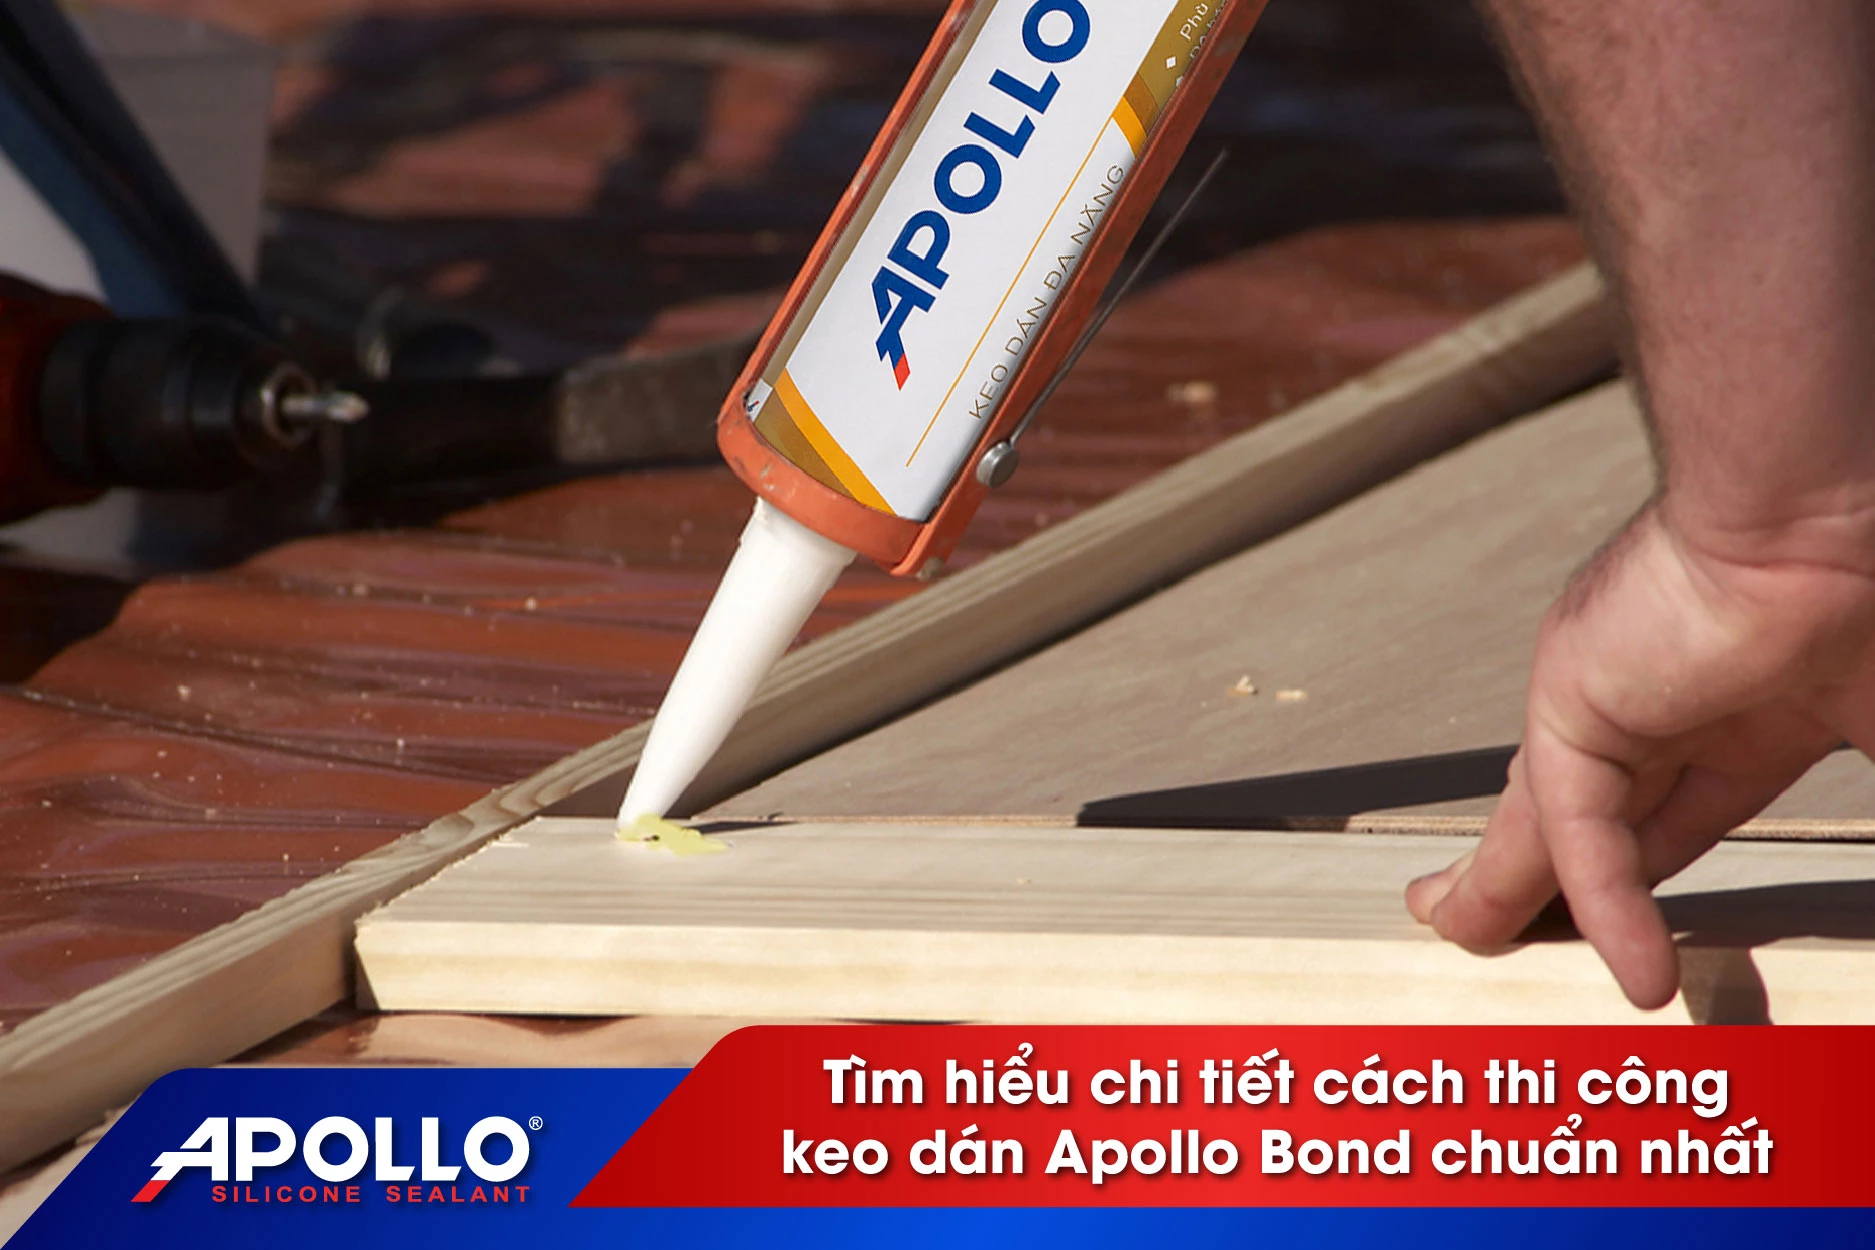 Thi công keo dán Apollo Bond thay cho đinh vít - Cách thi công chuẩn nhất trên từng vật liệu